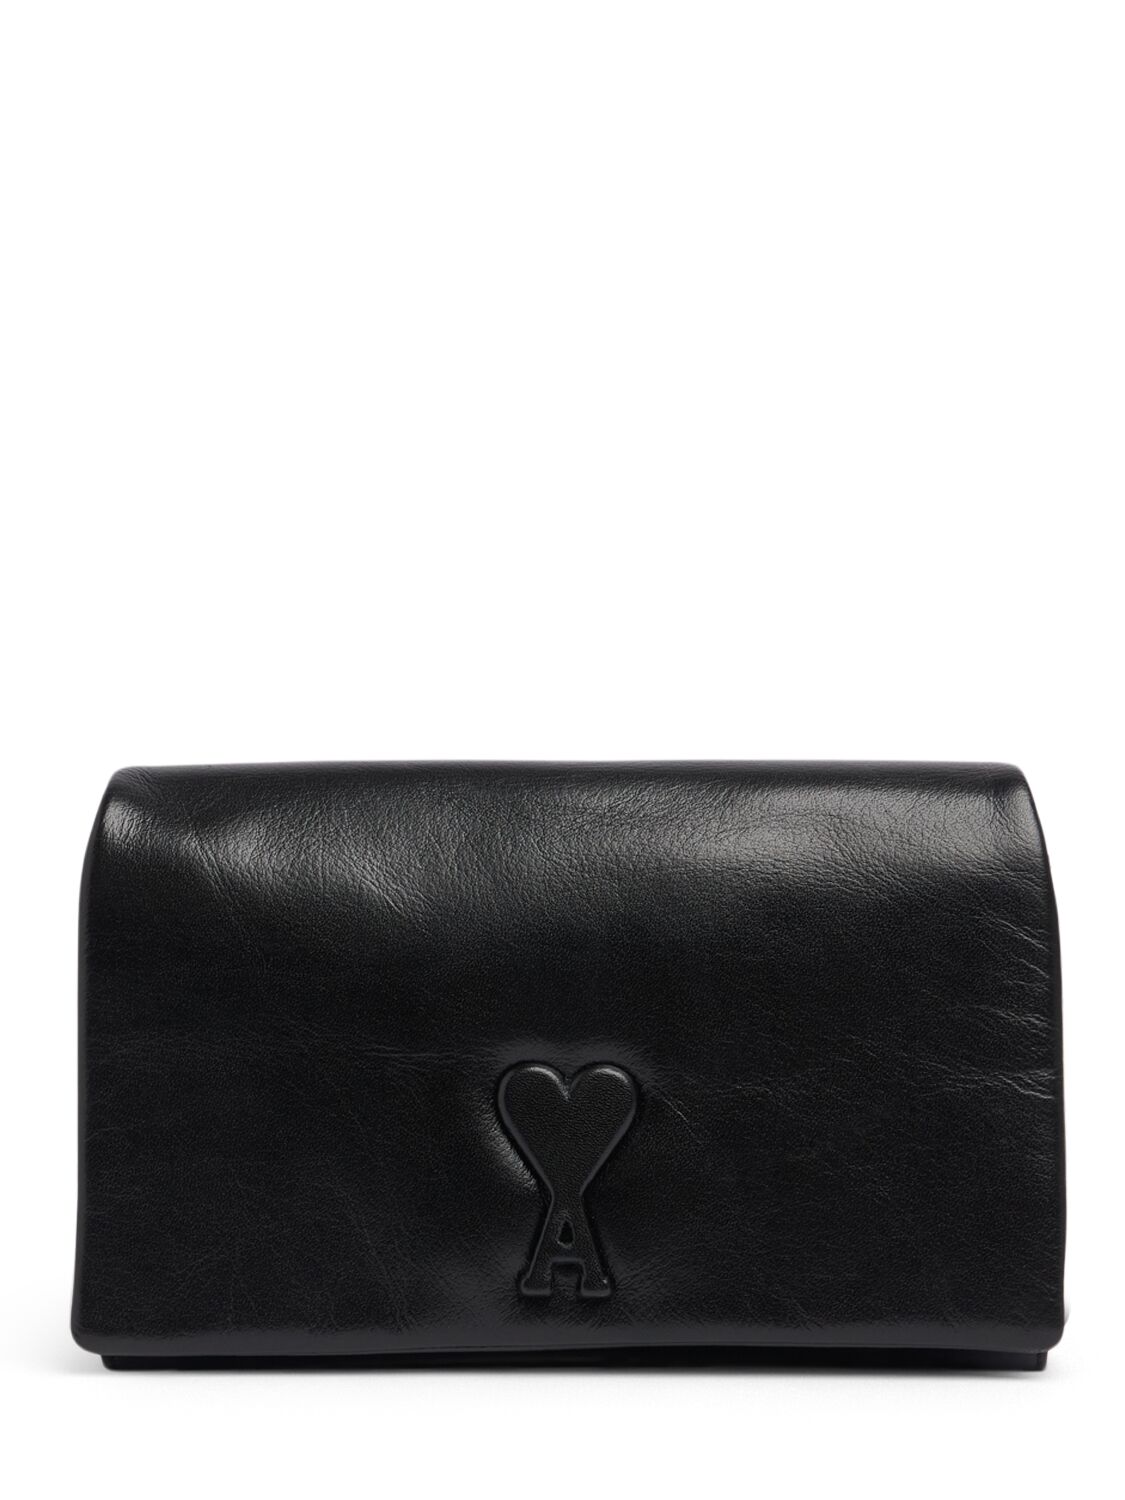 Ami Alexandre Mattiussi Voulez Vous Leather Wallet Clutch In Black